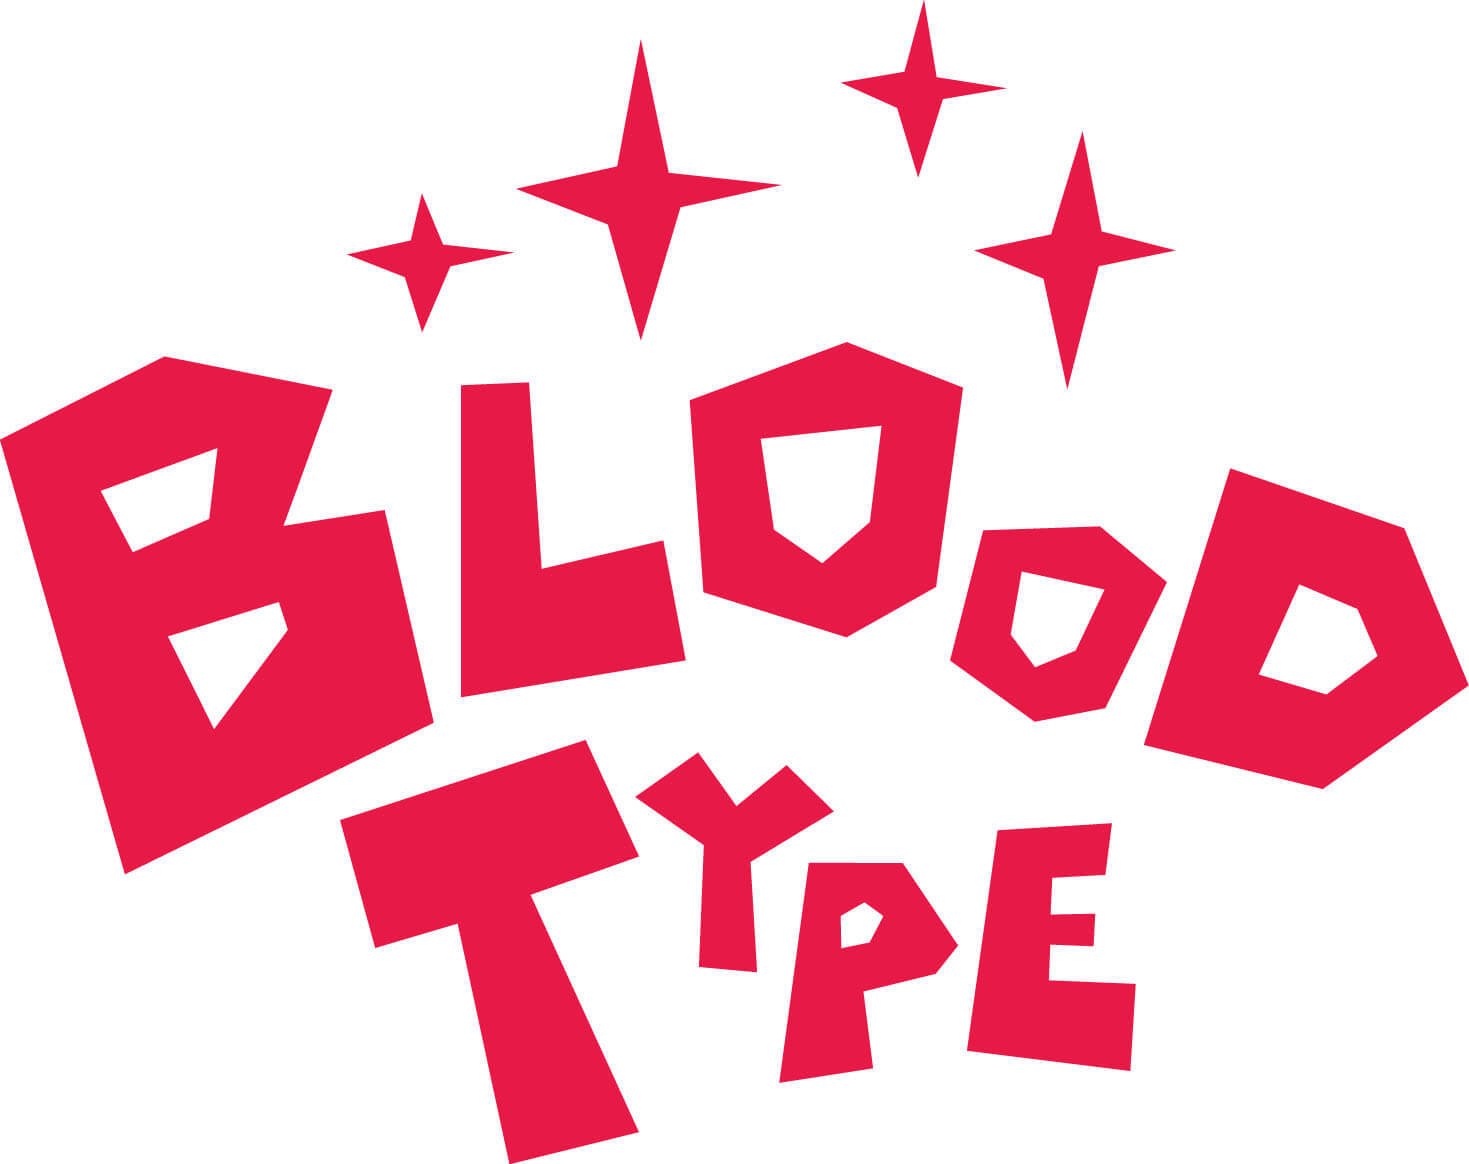 椎名林檎の血液型は 伝説の天才人気アーティストの性格が分かるエピソードをたっぷりご紹介 血液型ラボ